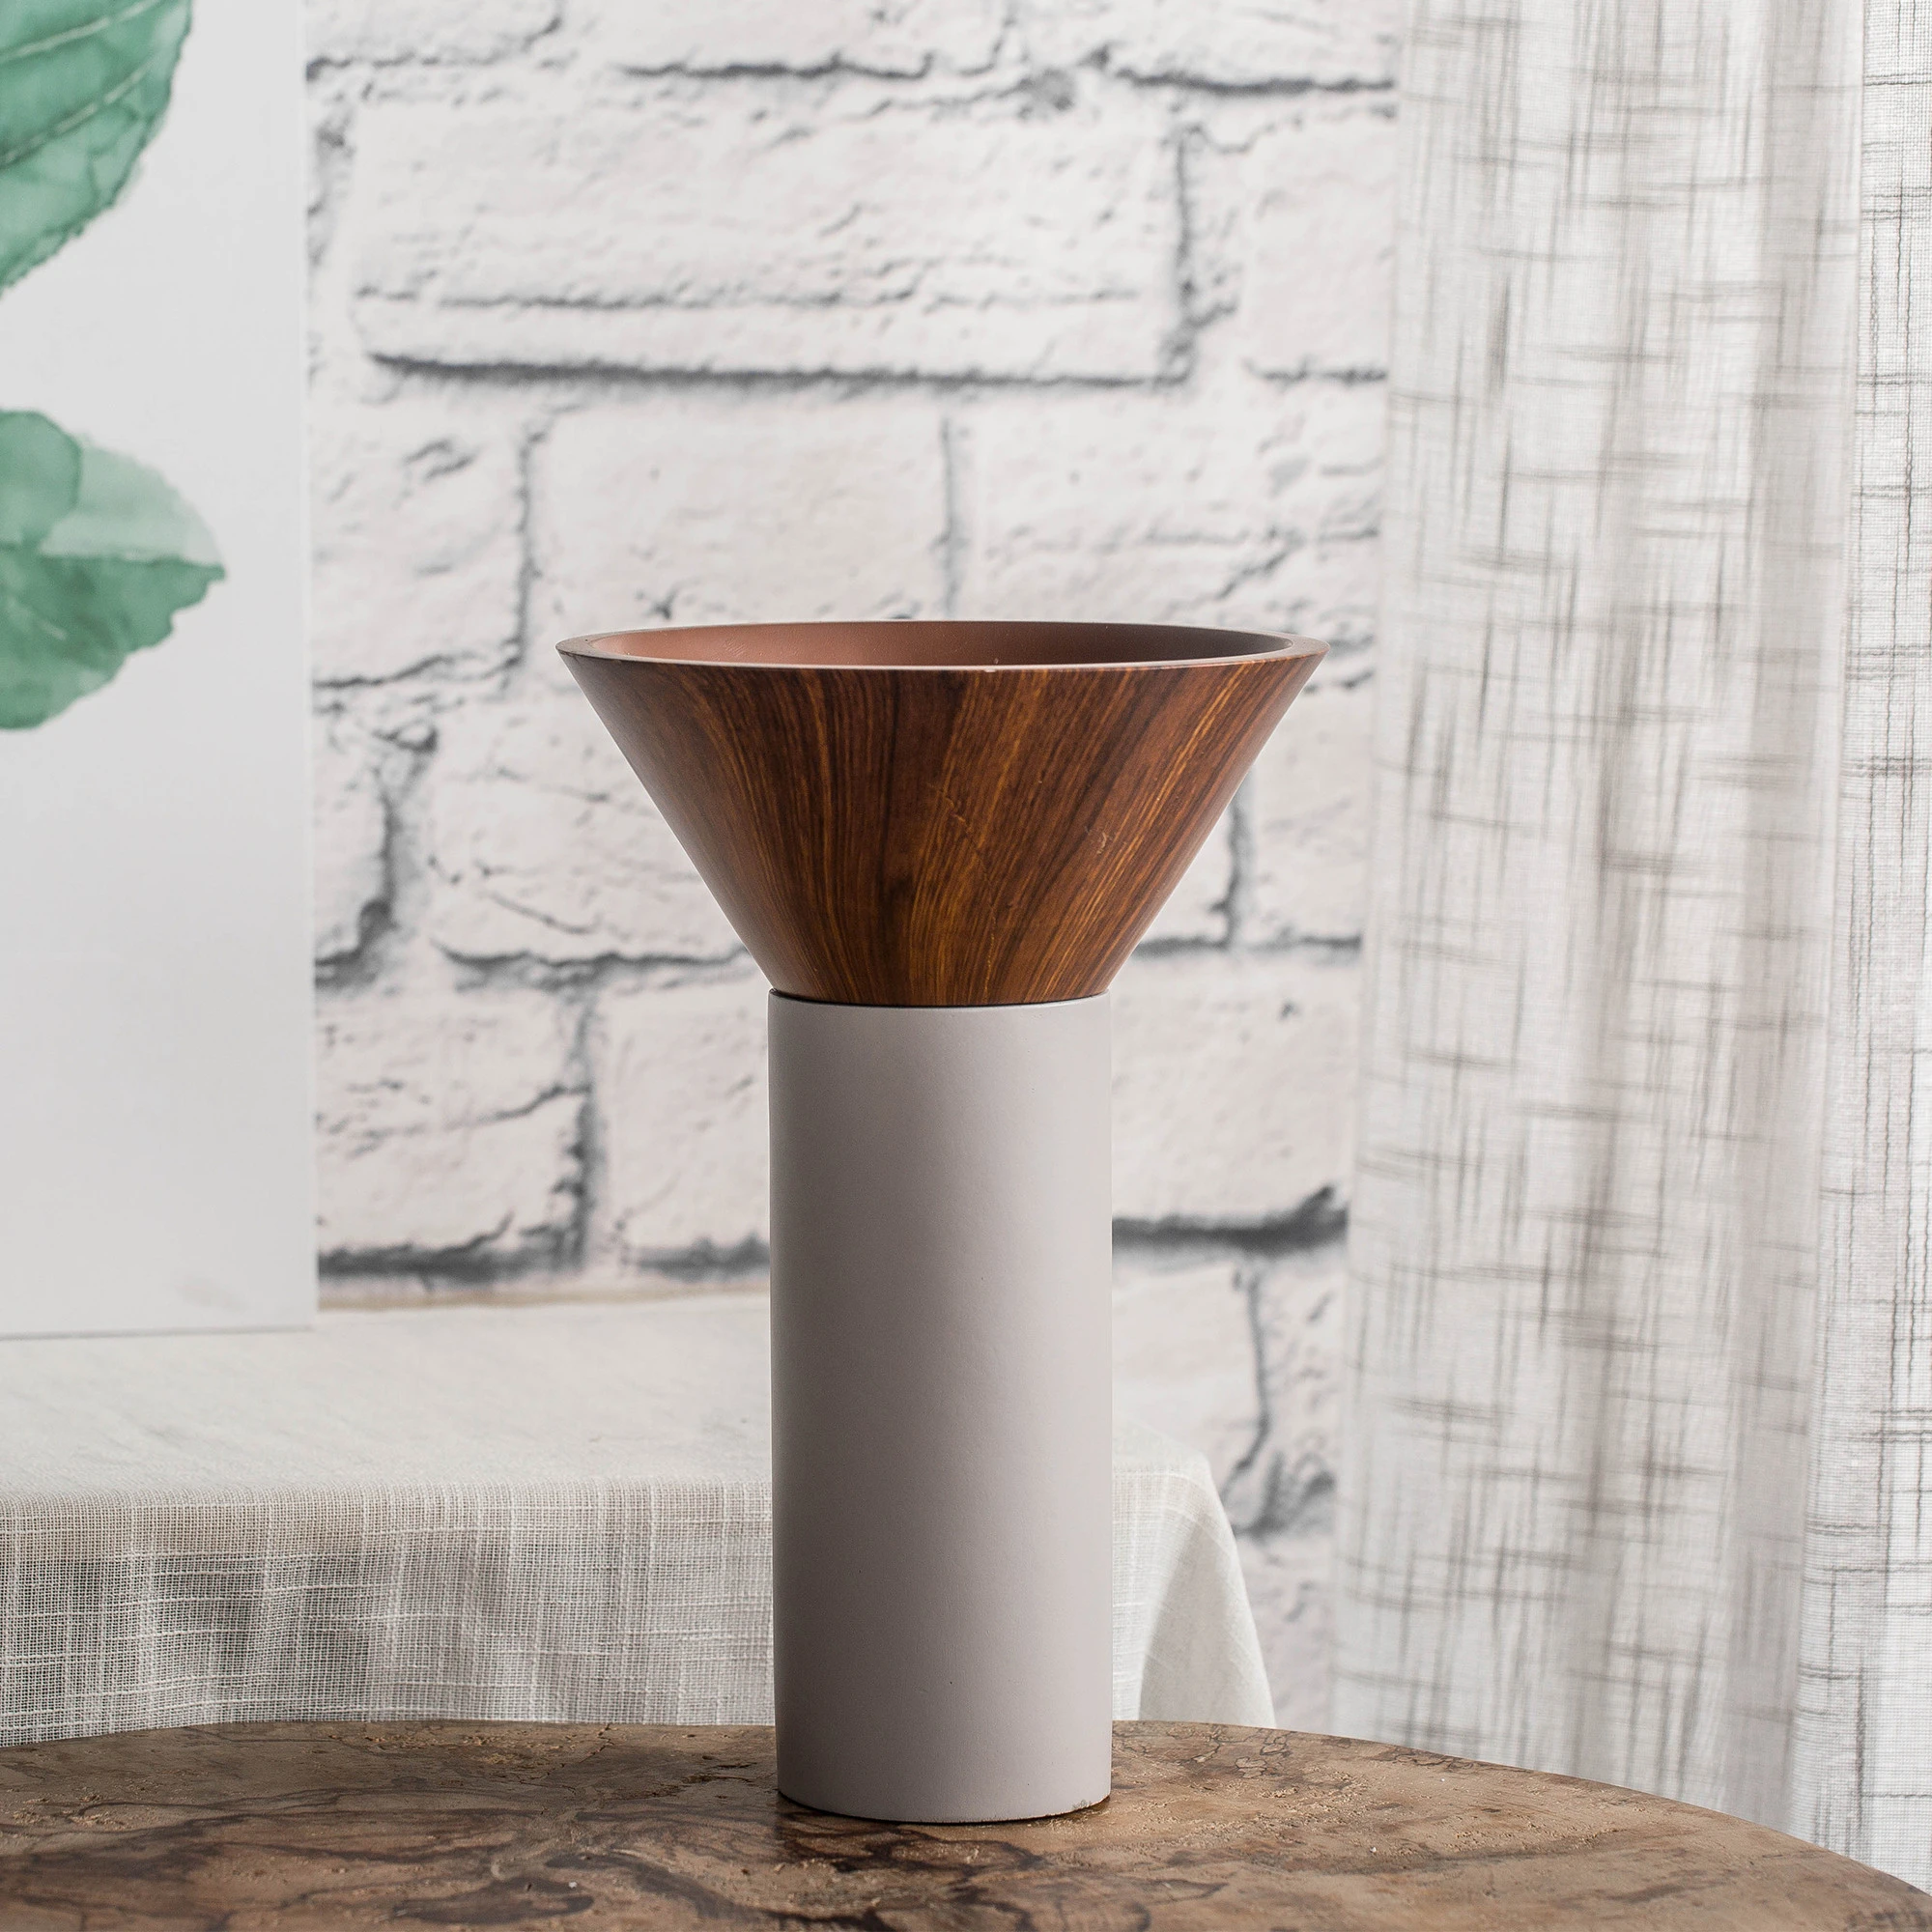 Wooden grain resin material for home decor &amp; flower vase